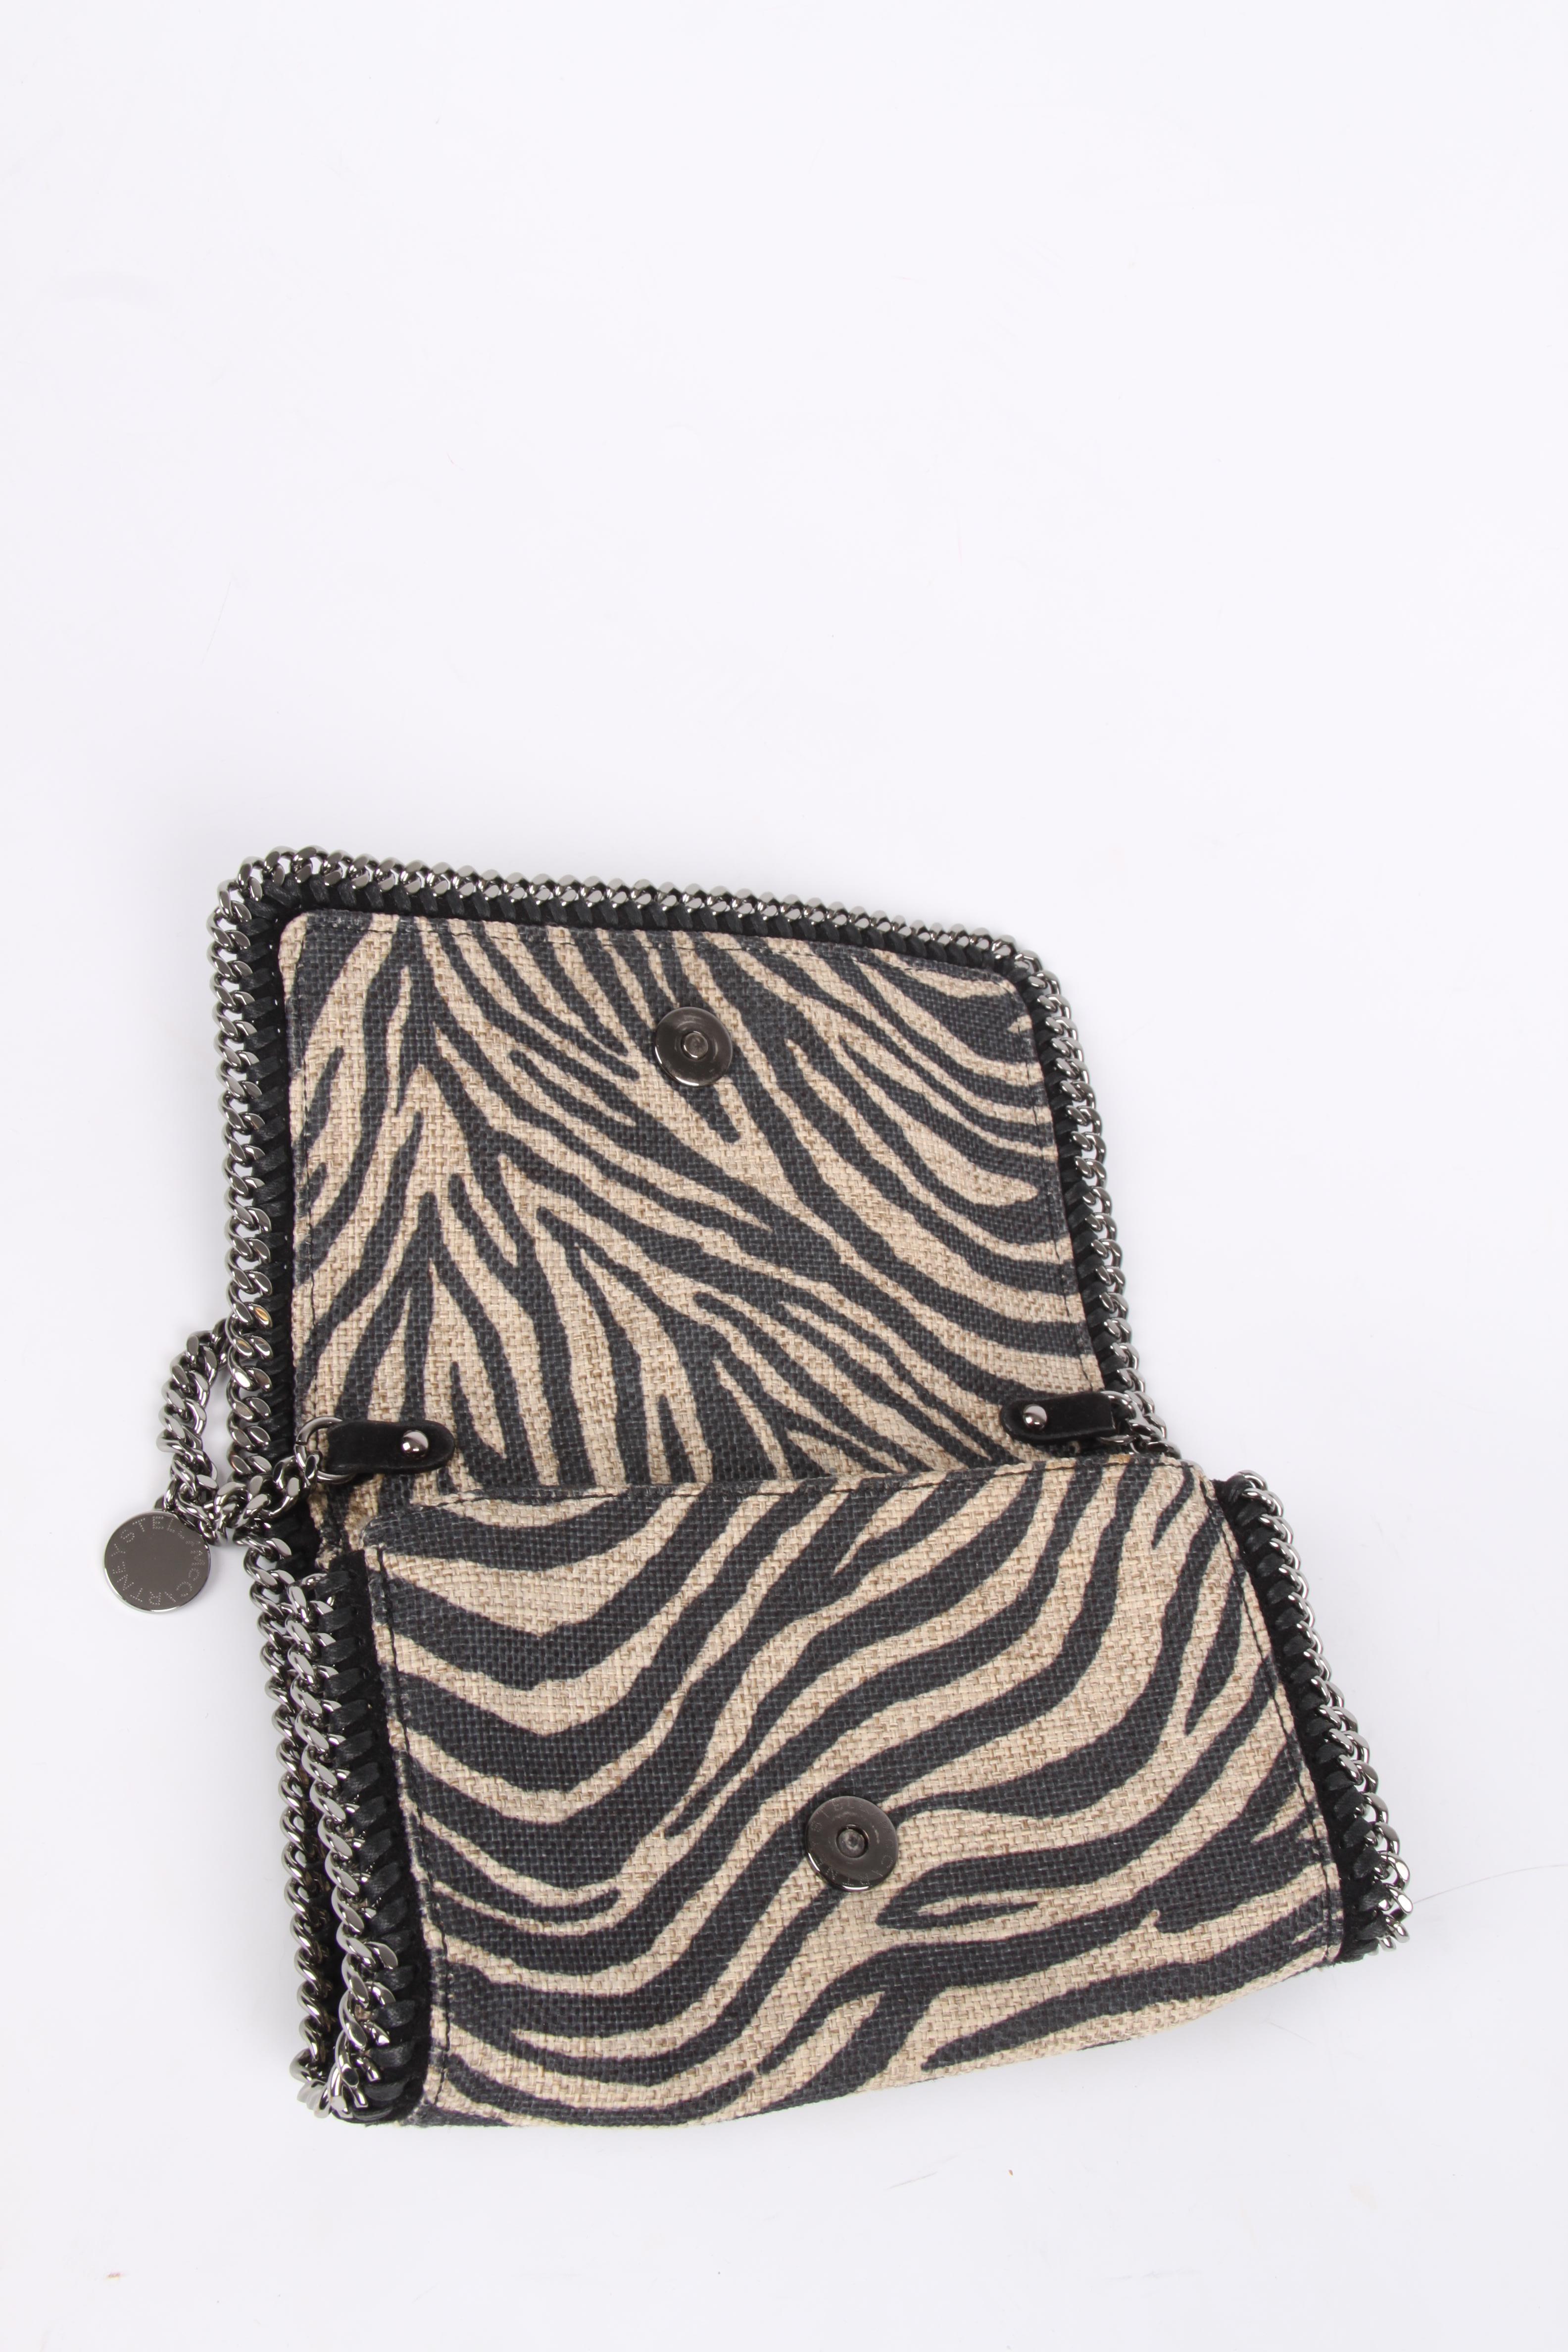 Black Stella McCartney Falabella Zebra Shoulder Bag - beige/black